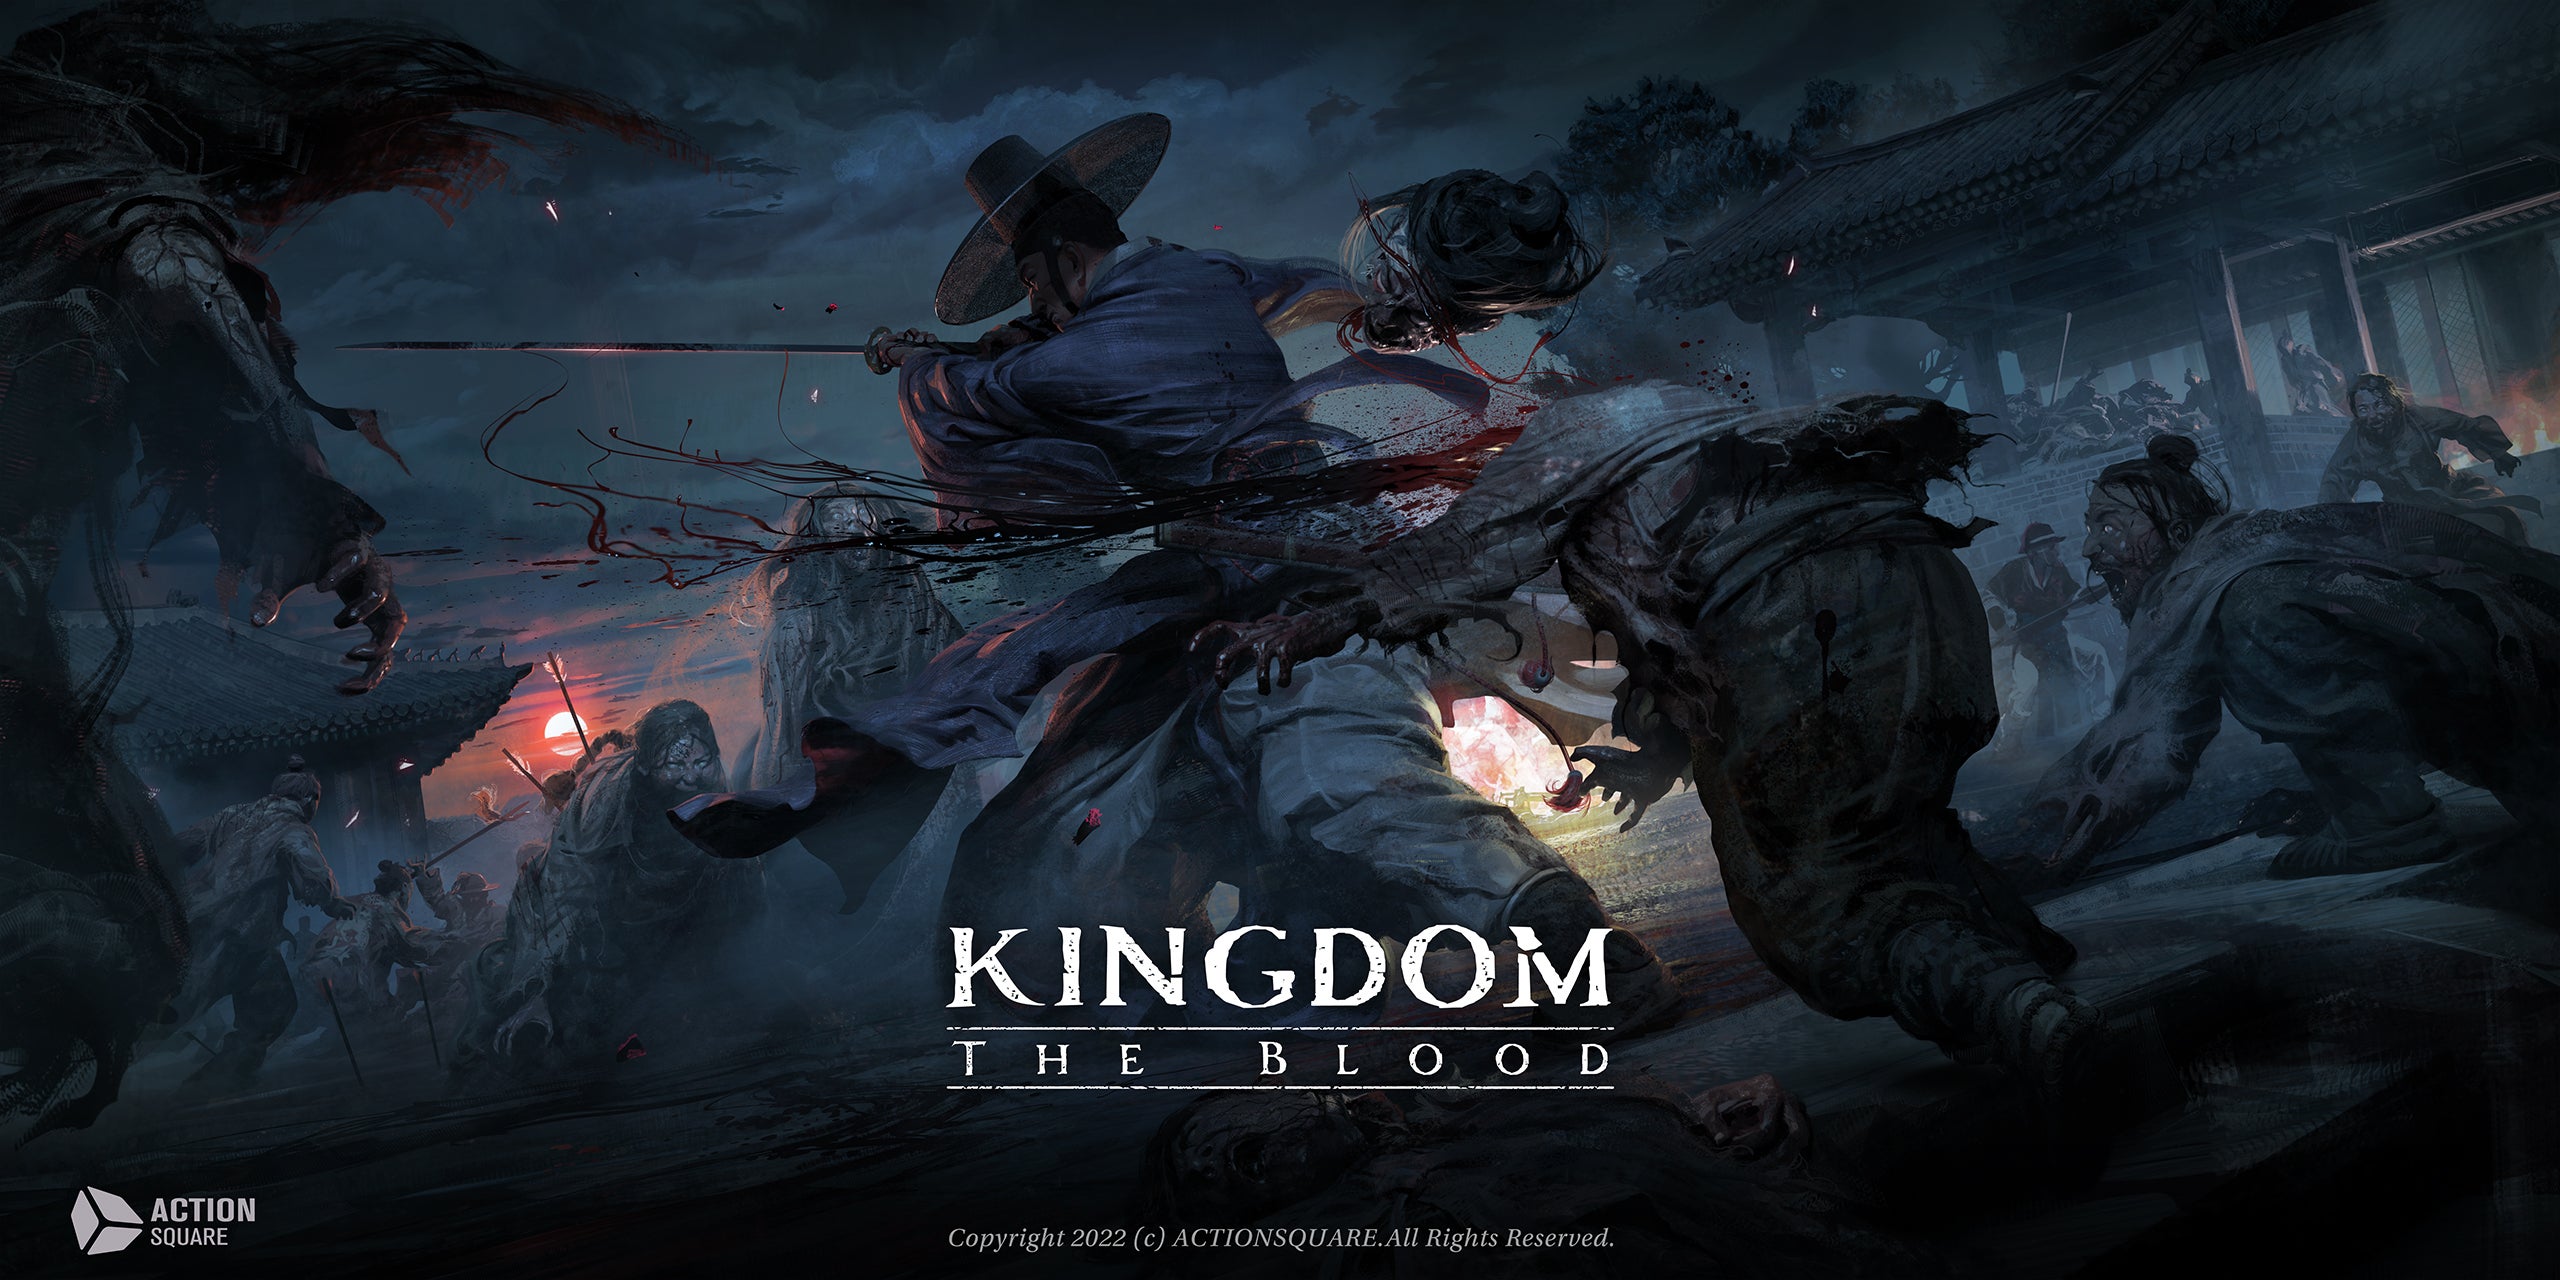 Action Square Reveals Teaser for Kingdom -Netflix Soulslike RPG, Game Based on The Netflix Show 'Kingdom'